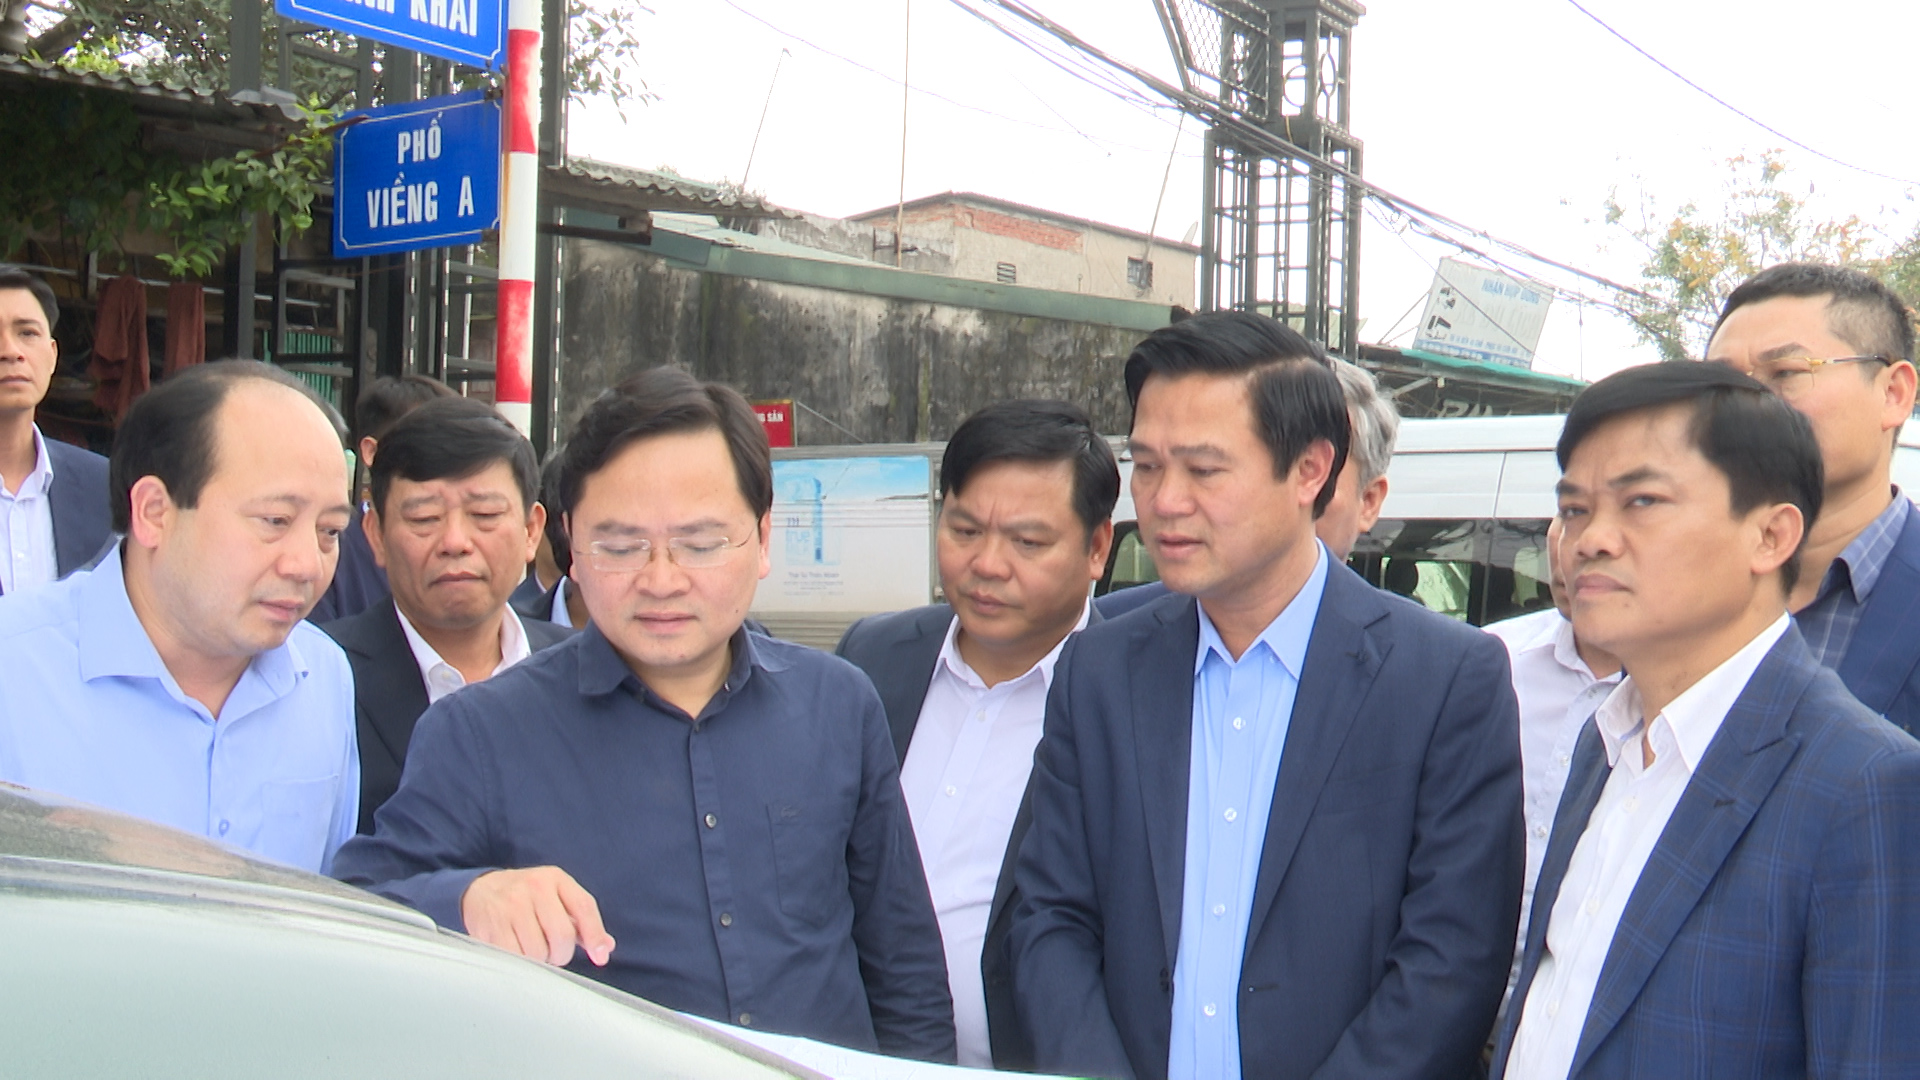 Bí thư làm việc với thành phố Từ Sơn về công tác GPMB dự án đường tỉnh 295B